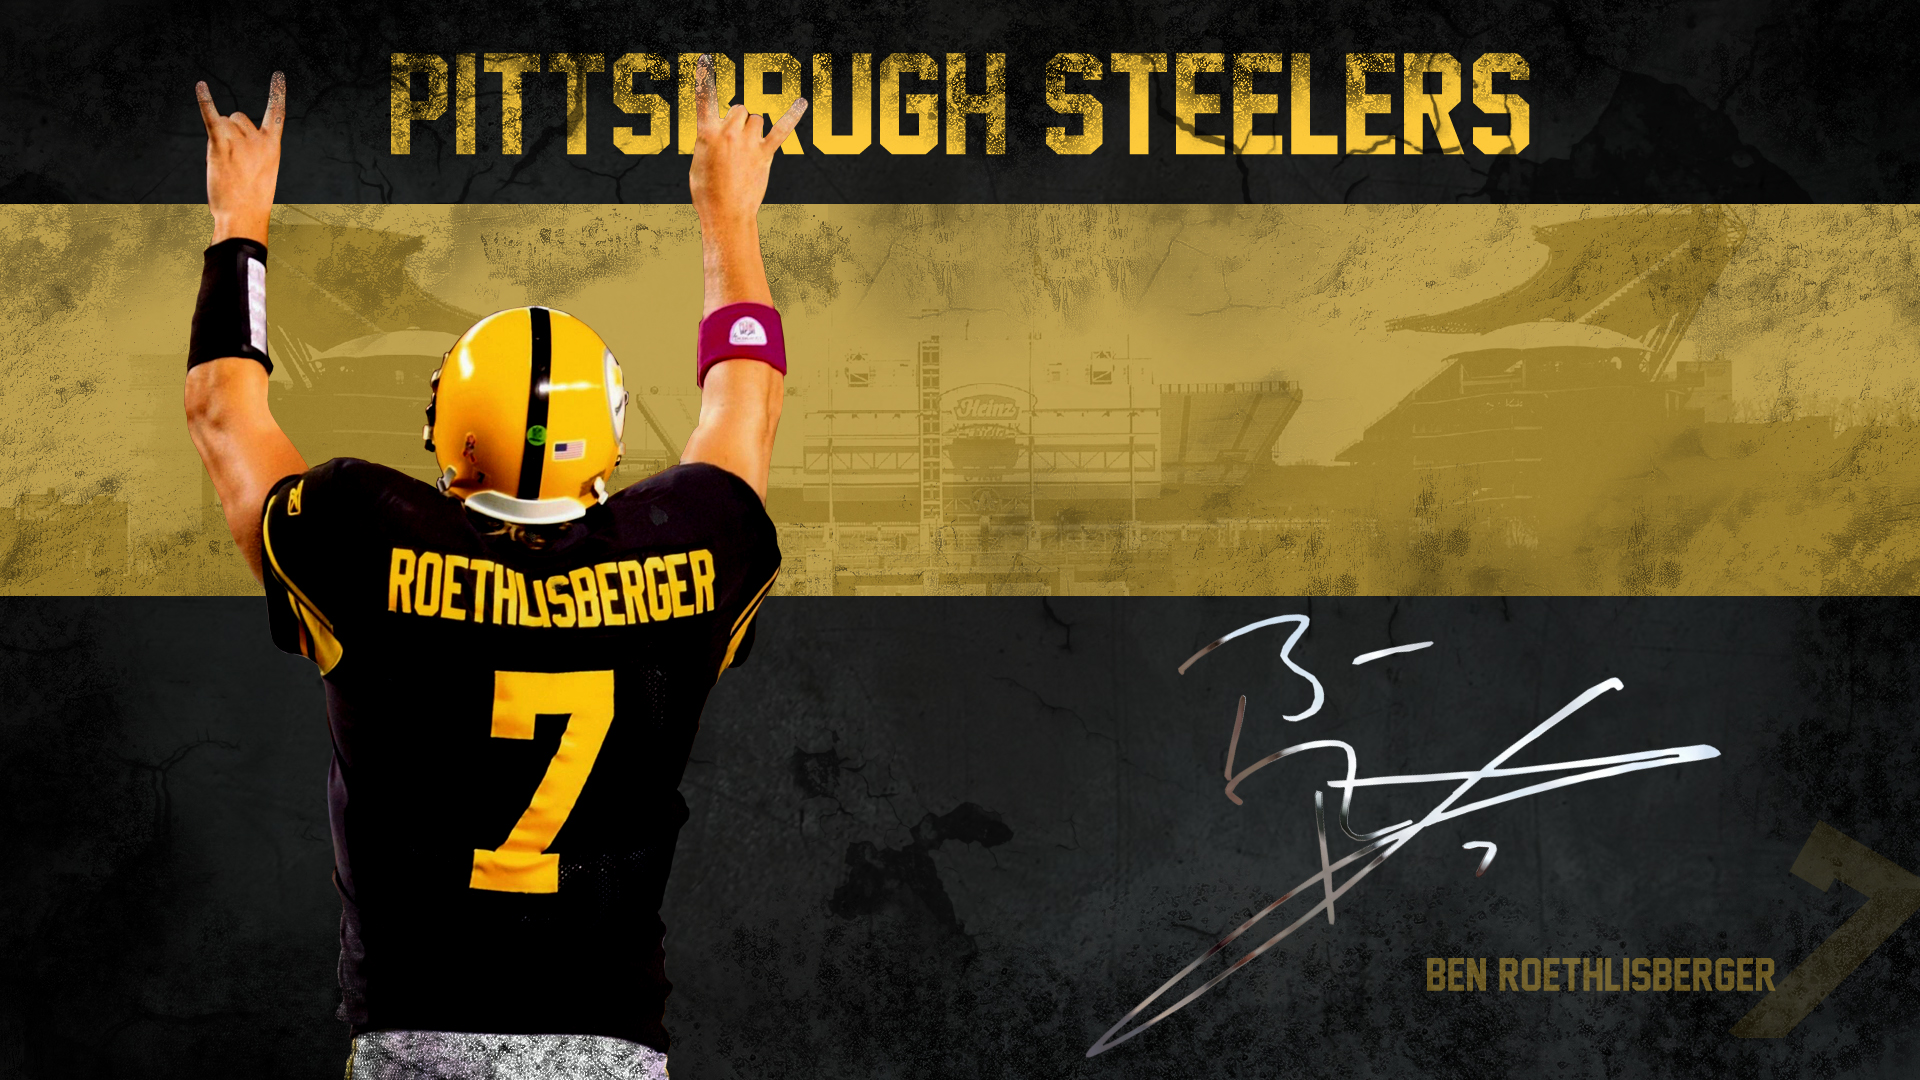  Steelers HD desktop wallpaper Pittsburgh Steelers wallpapers 1920x1080